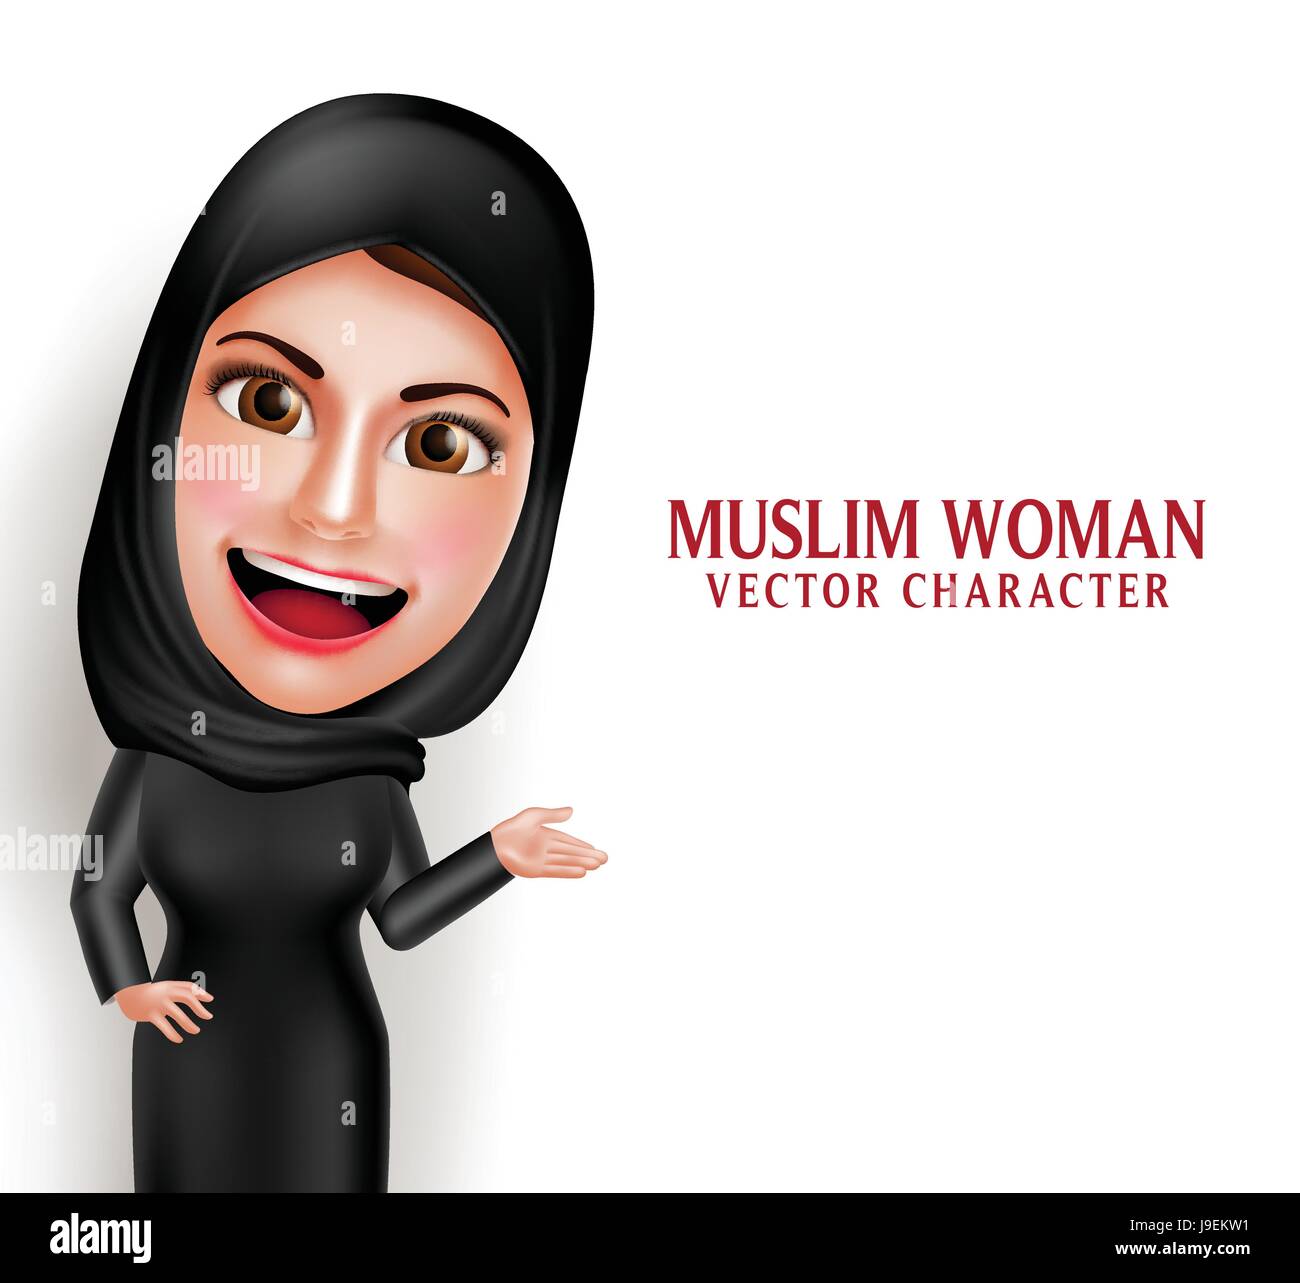 Muslimische Frau Vektor Charakter präsentiert in einem leeren weißen Raum mit schönen Lächeln tragen Hijab und islamische Kleidung stehen in Stock Vektor